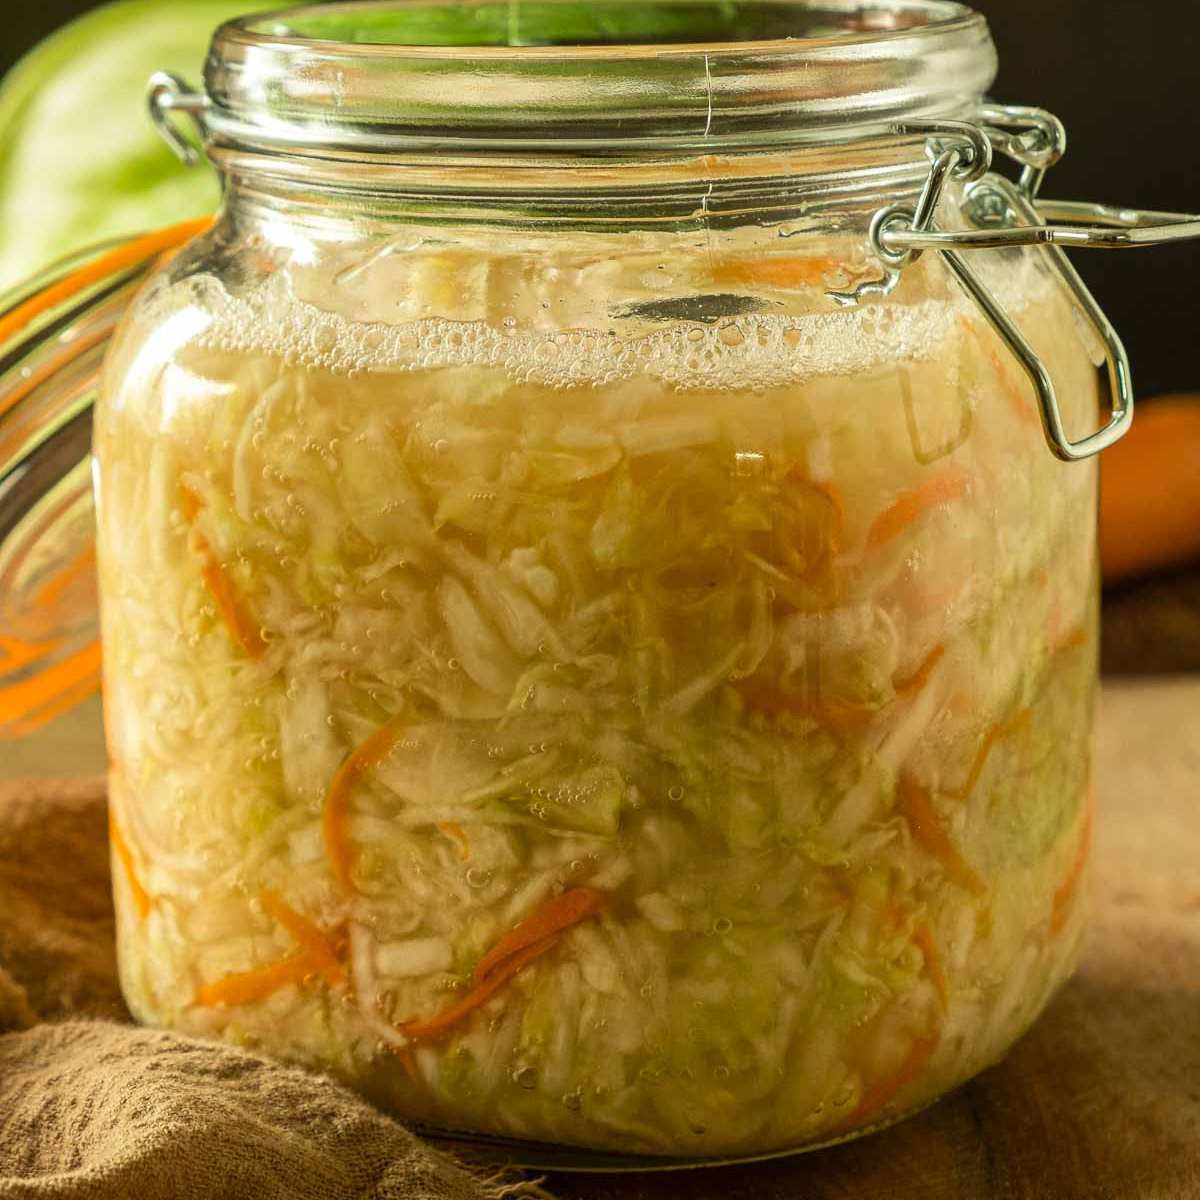 A large jar full of homemade fermented green cabbage sauerkraut.